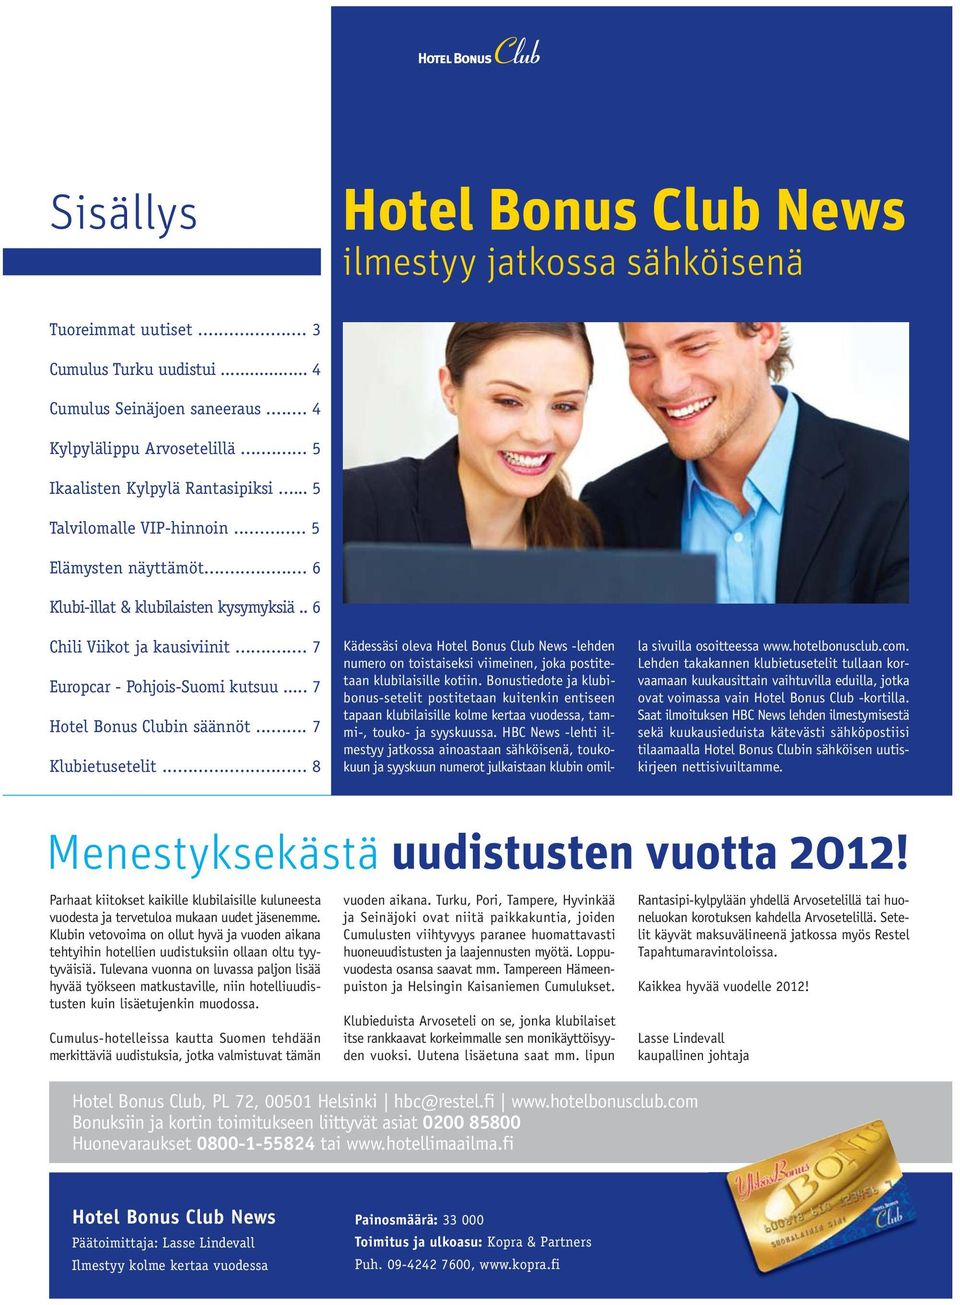 .. 7 Europcar - Pohjois-Suomi kutsuu... 7 Hotel Bonus Clubin säännöt... 7 Klubietusetelit.